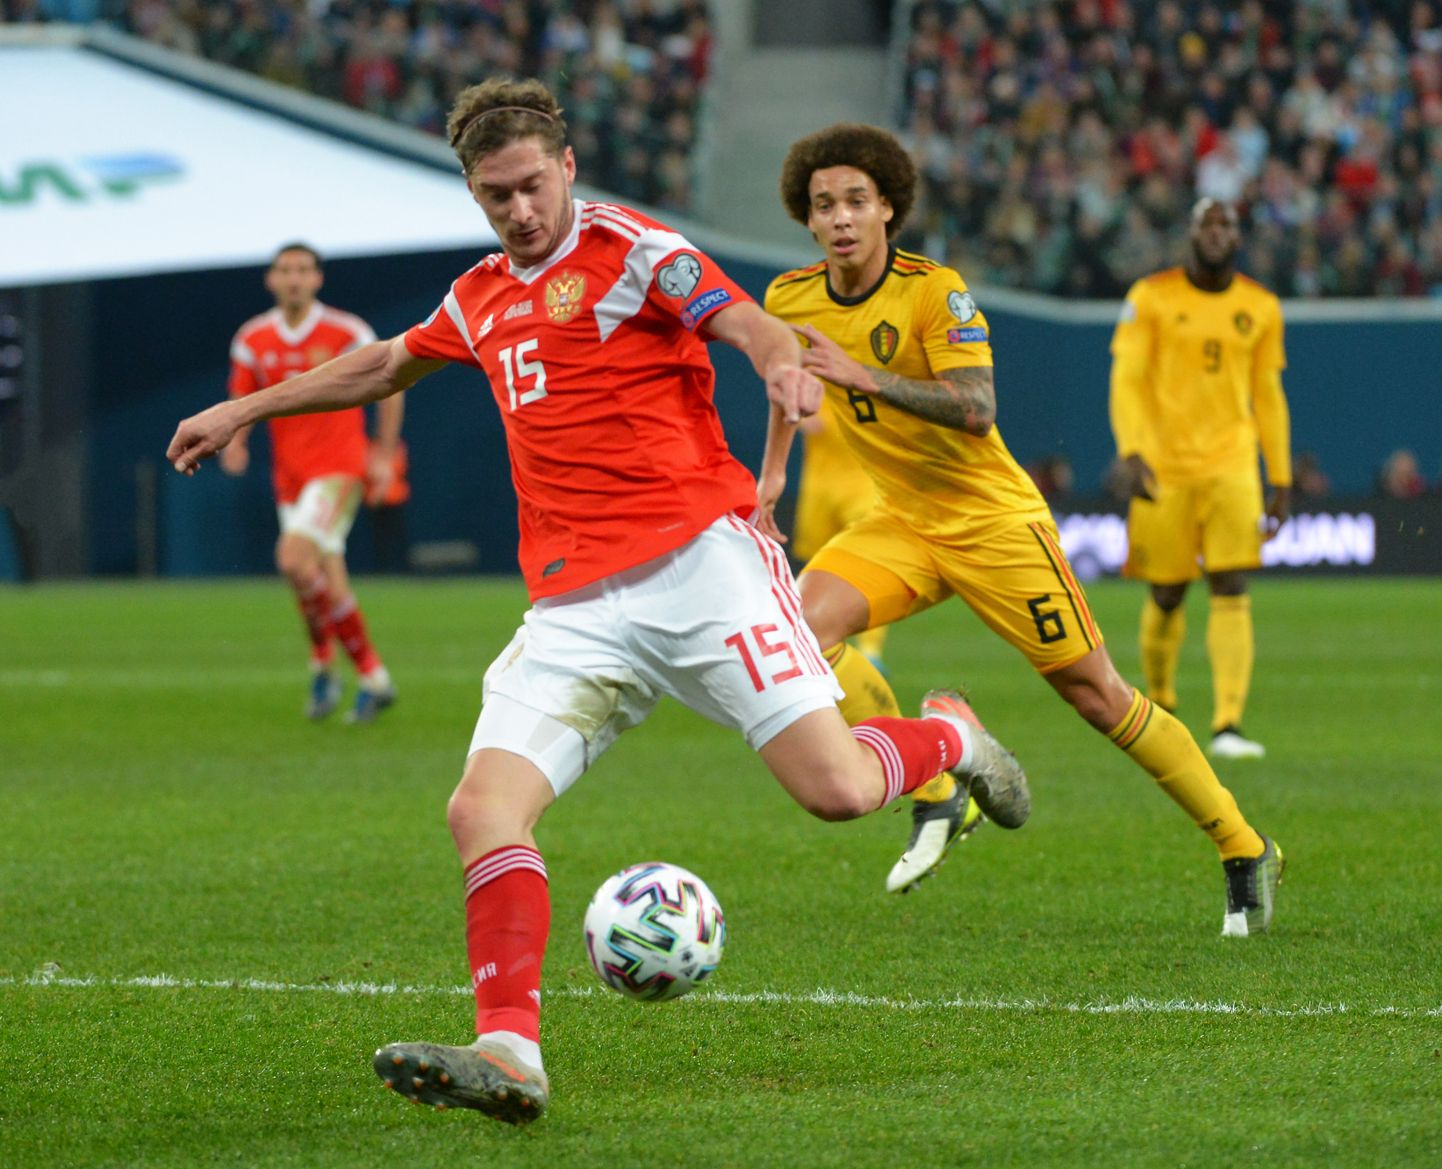 Venemaa jalgpallikoondislane Aleksei Mirantšuk laupäeval mängus Belgia vastu.